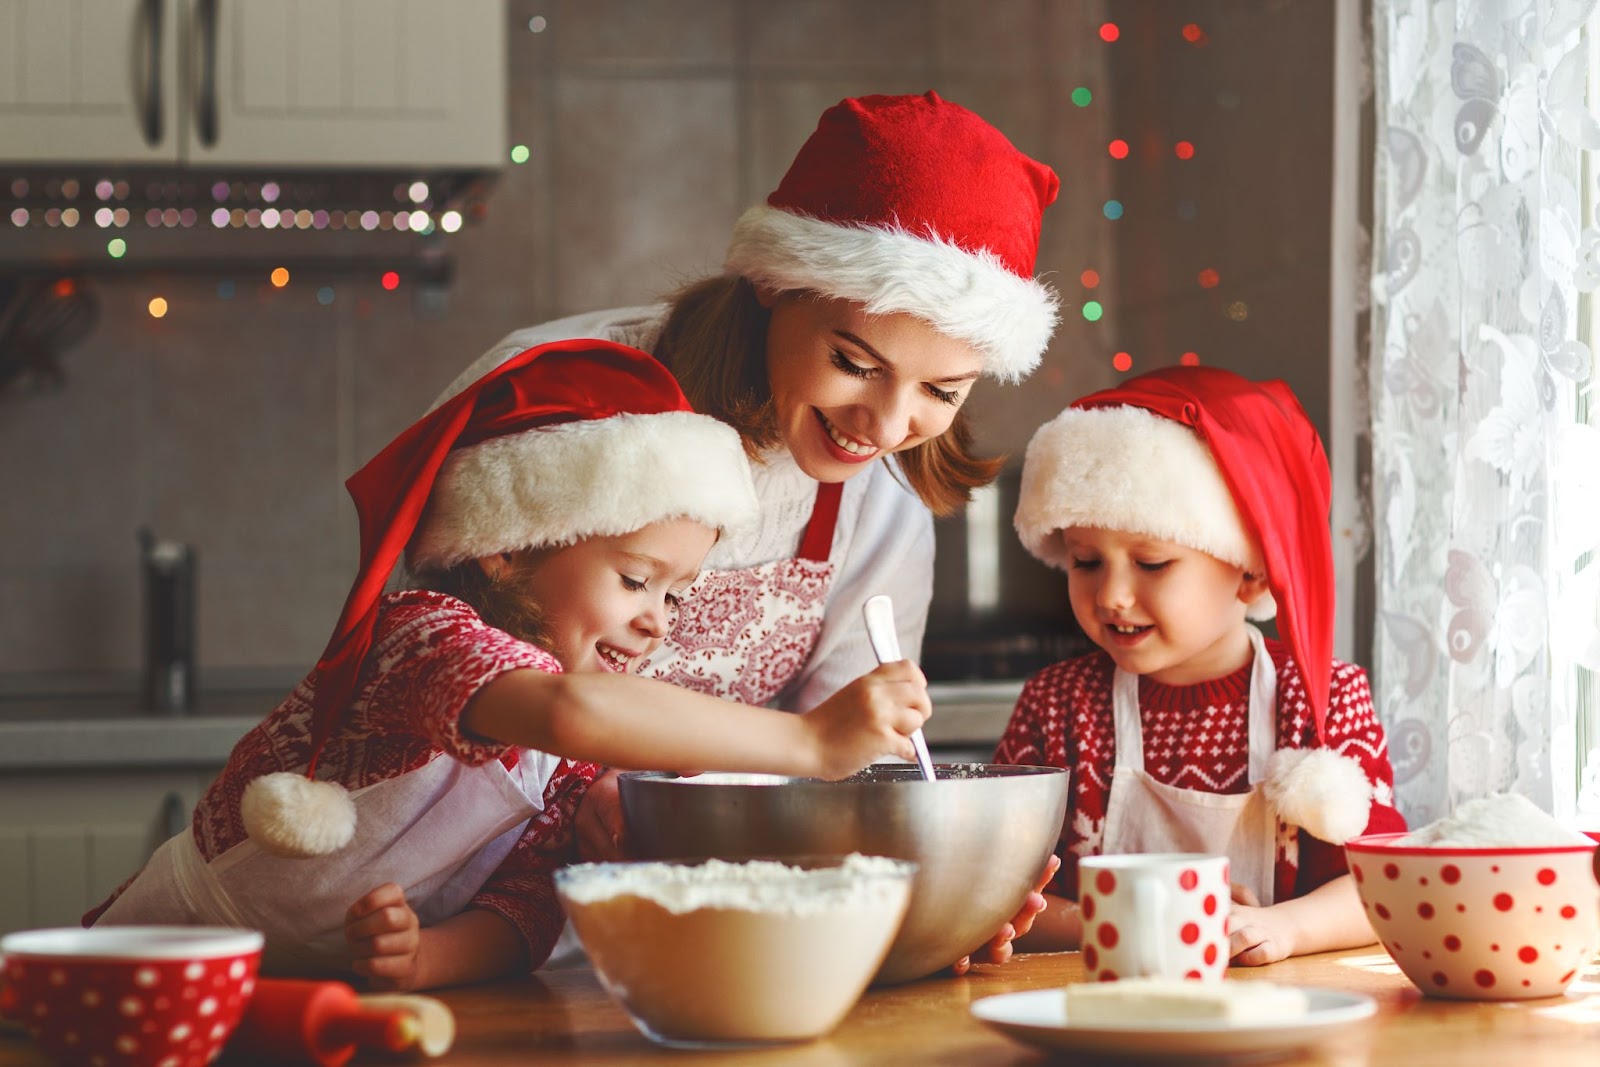 Recettes simples de Noël en anglais pour cuisiner avec des enfants